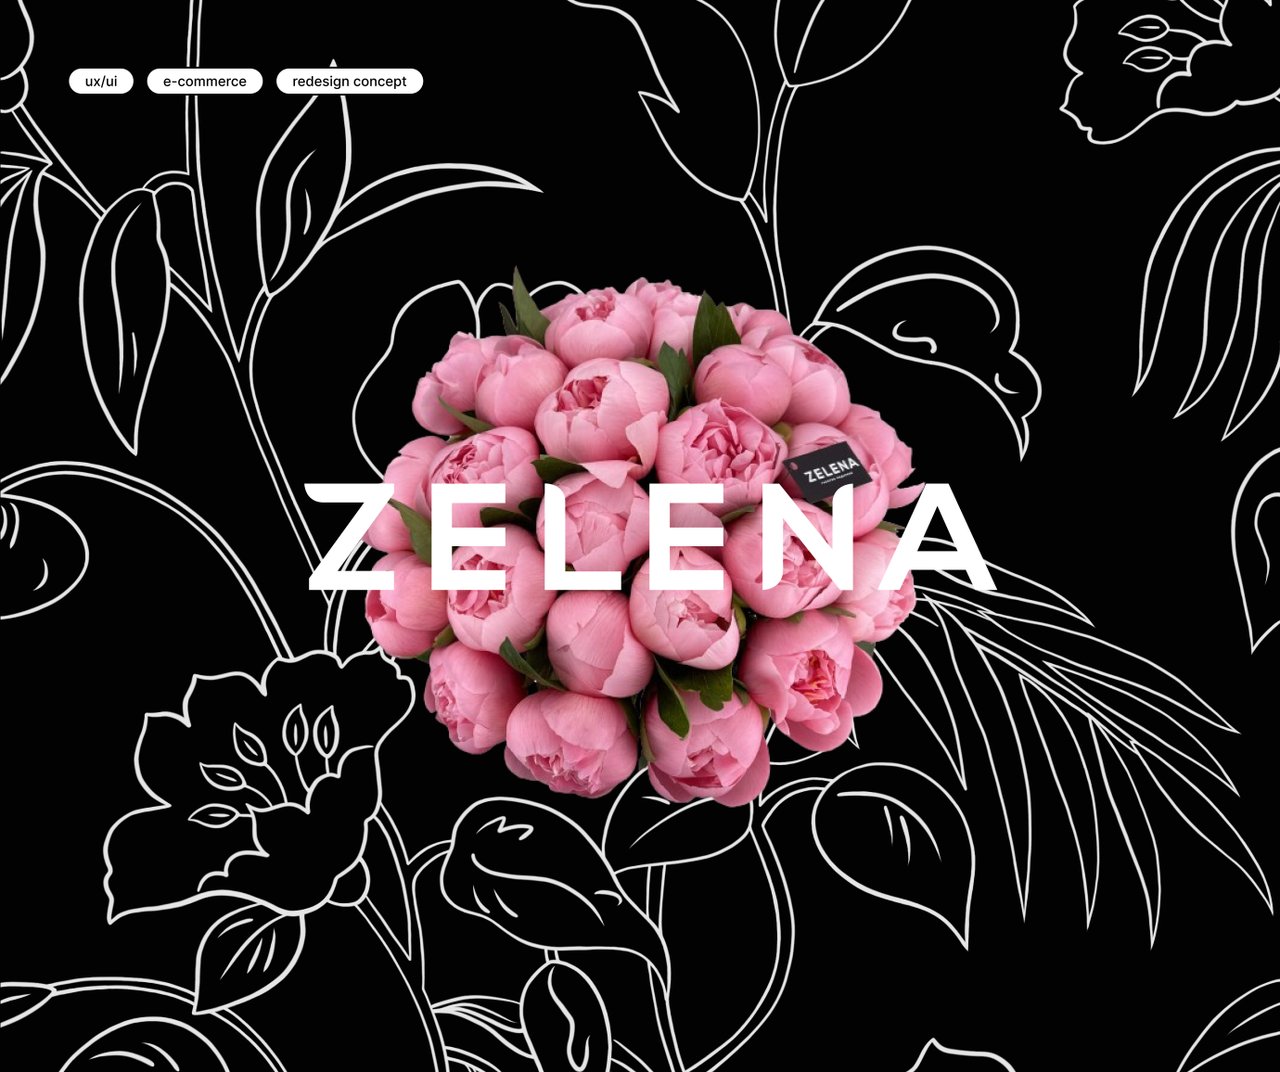 Zelena - інтернет-магазин флористики та декору 